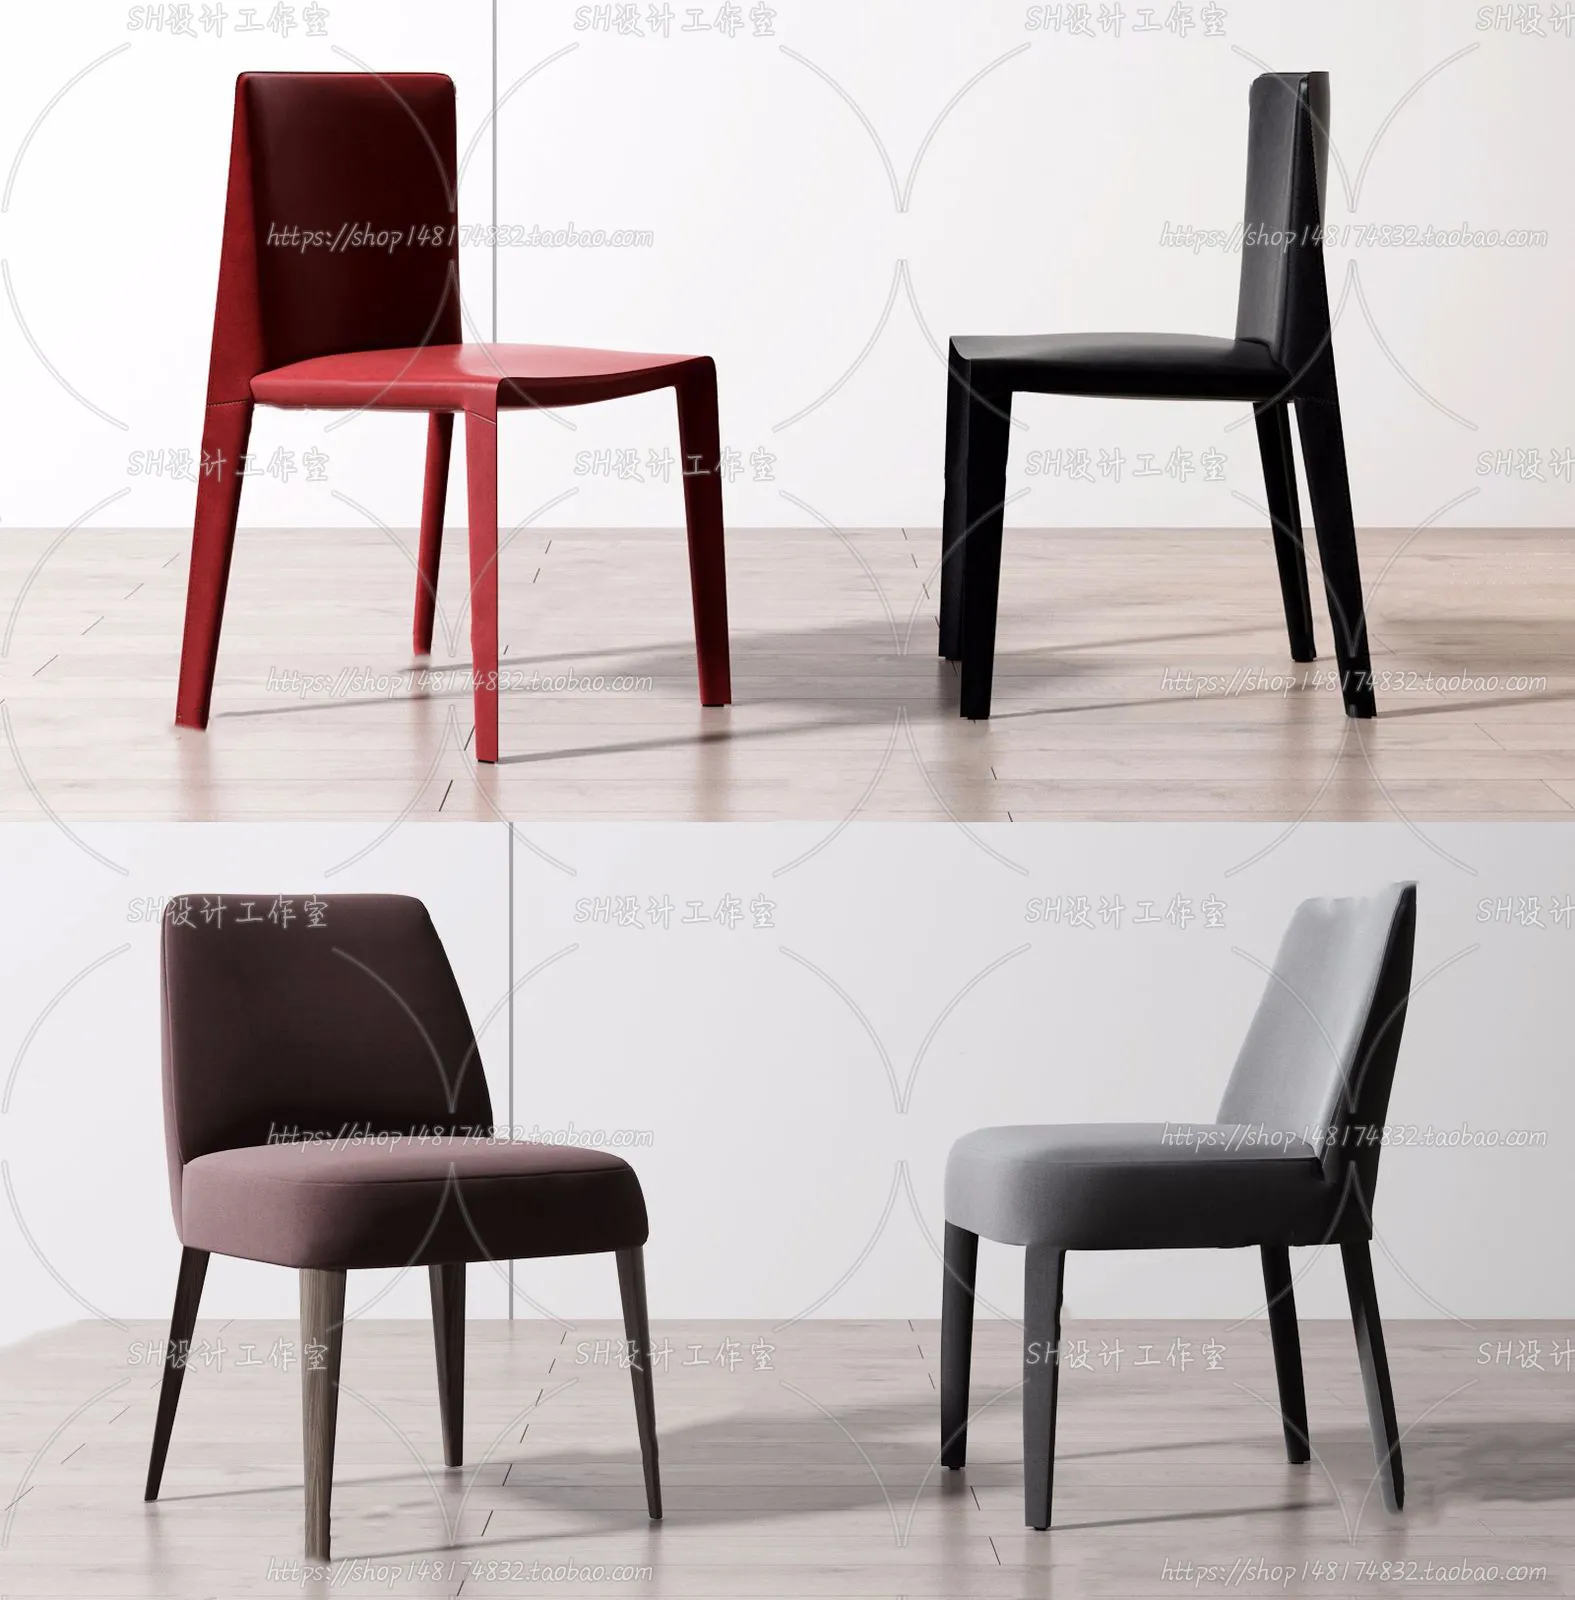 Chair – Single Chair 3D Models – 2014